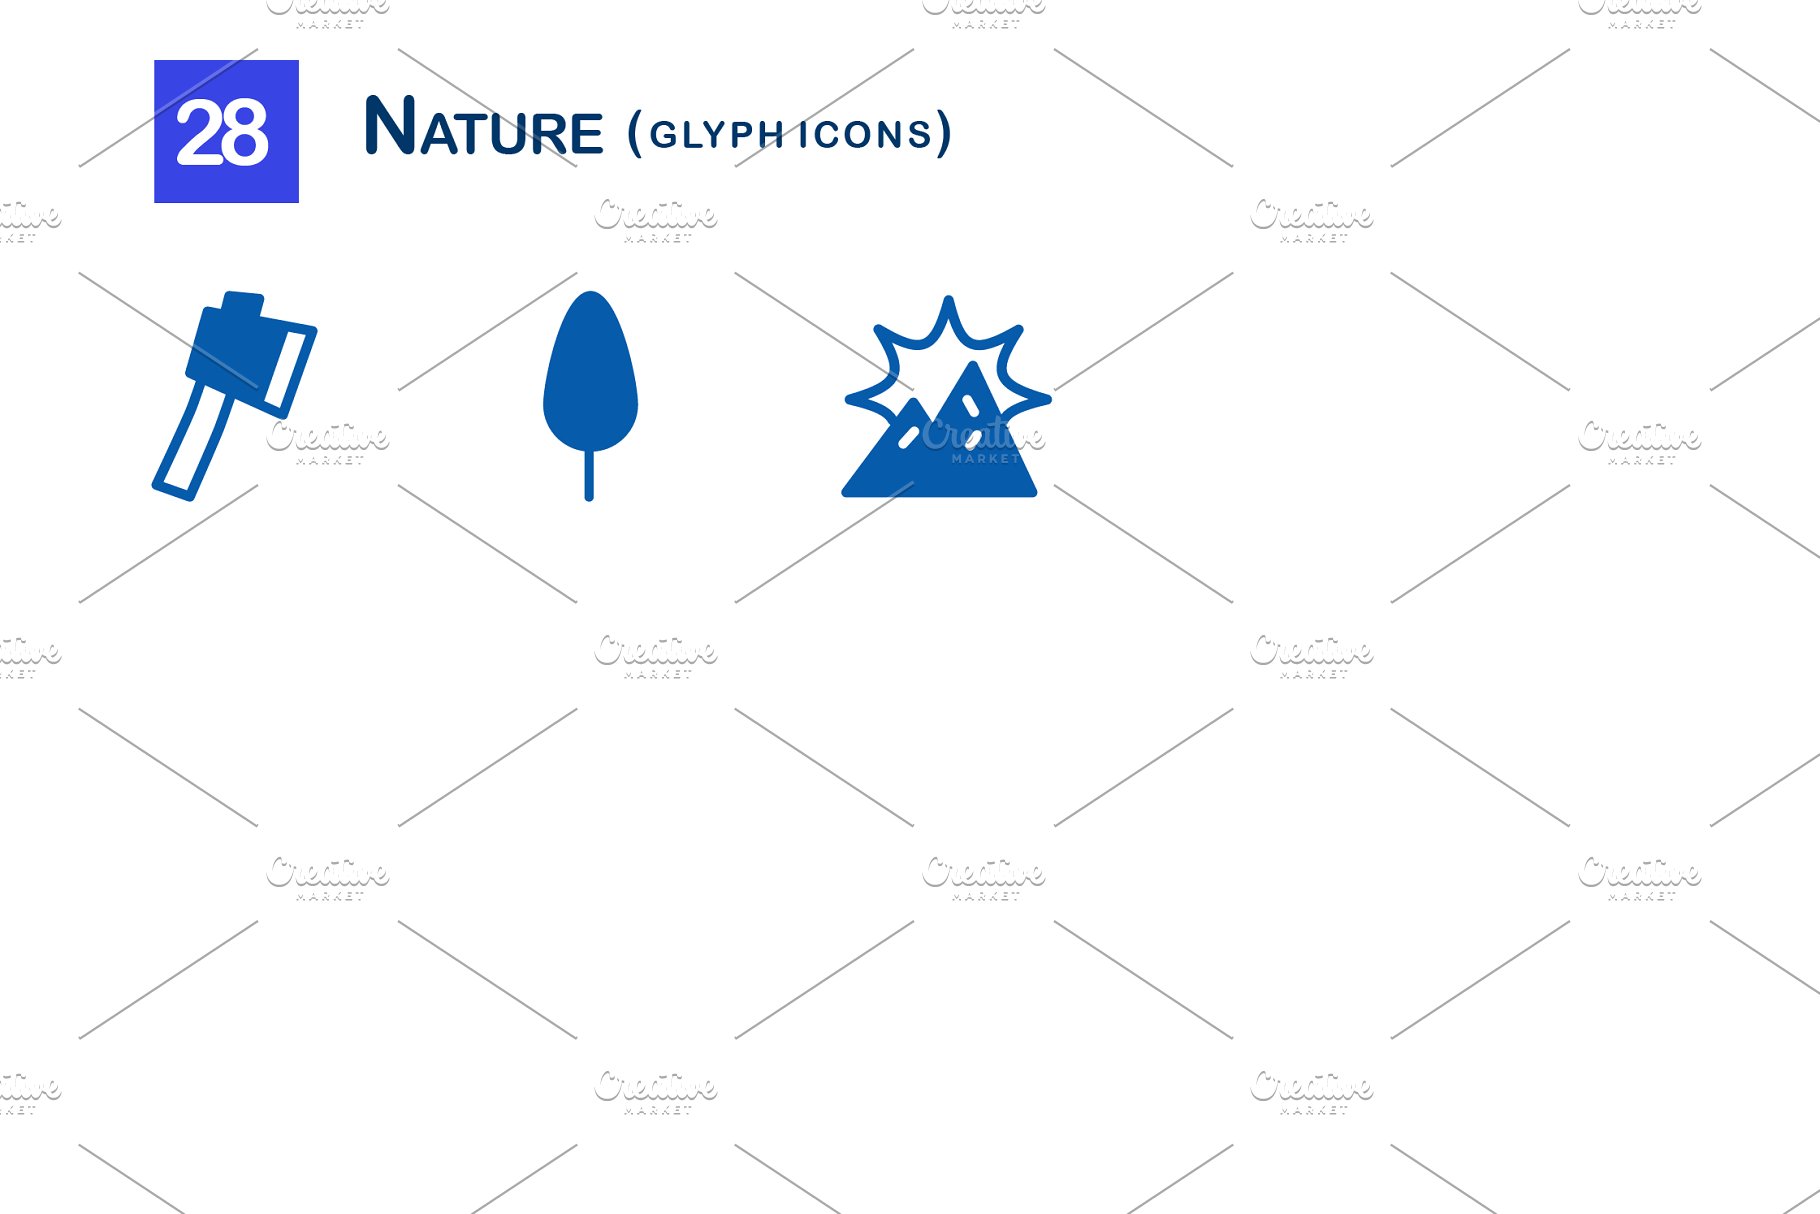 28个大自然元素字体蚂蚁素材精选图标 28 Nature Glyph Icons插图(2)